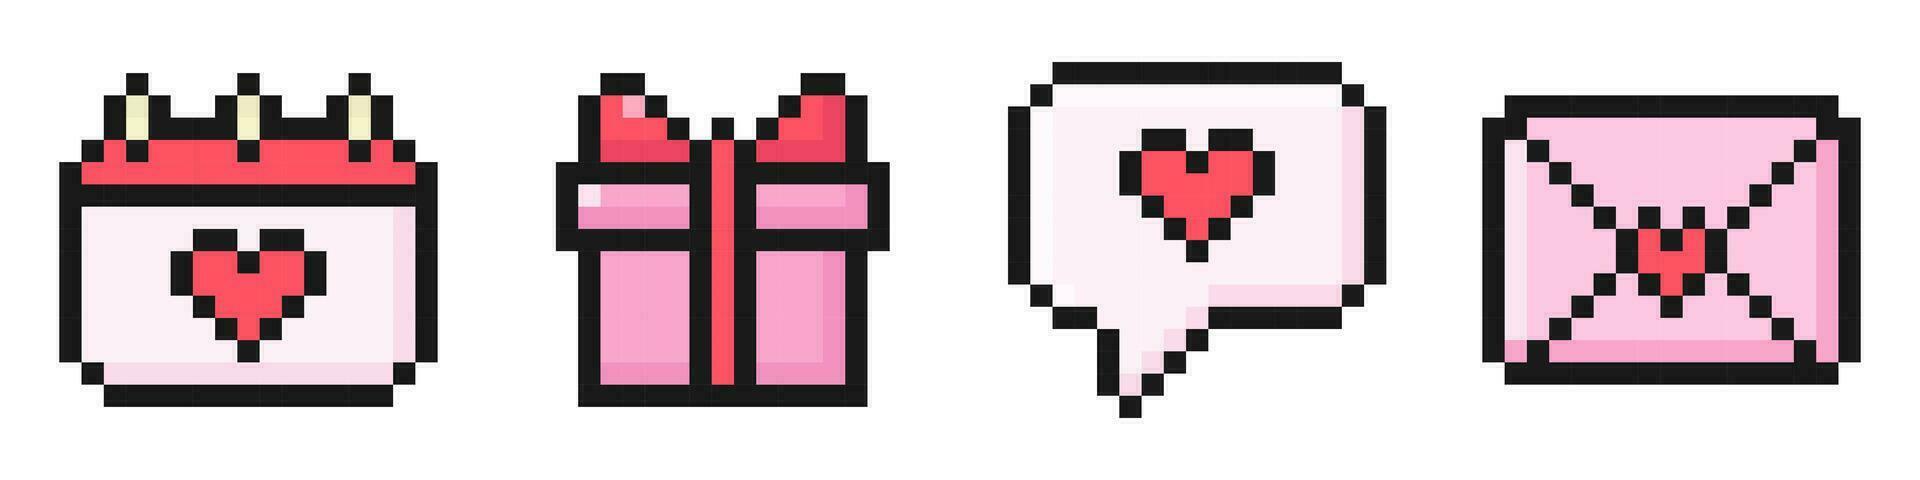 Valentijnsdag dag pixel reeks van pictogrammen, vintage, 8 beetje, jaren 80, 90s speelhal spel stijl, pictogrammen voor spel of mobiel app, dialoog, brief, kalender, geschenk, vector illustratie